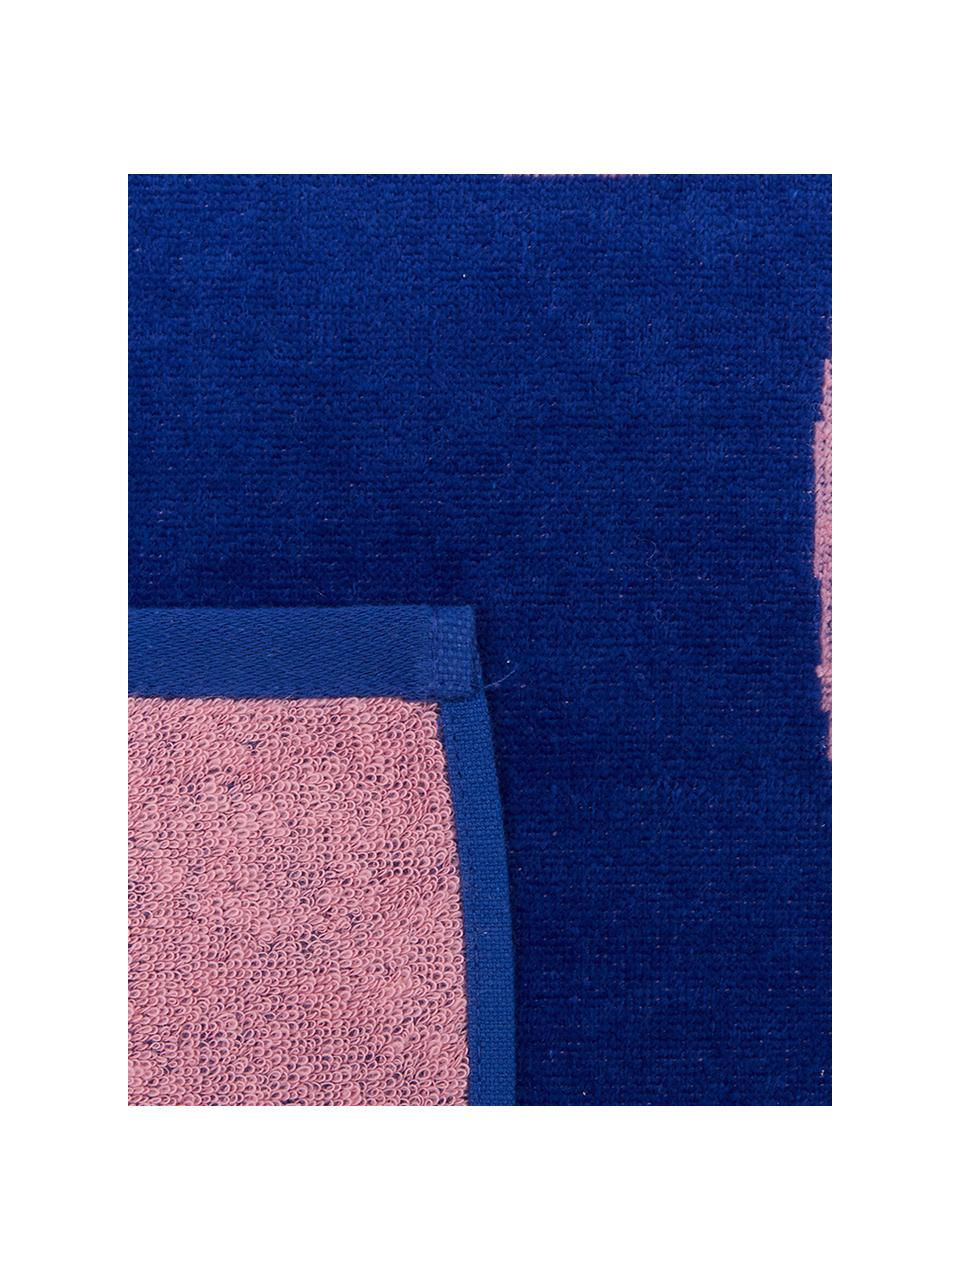 Toalla de playa Mingo, Azul, rosa, An 80 x L 160 cm